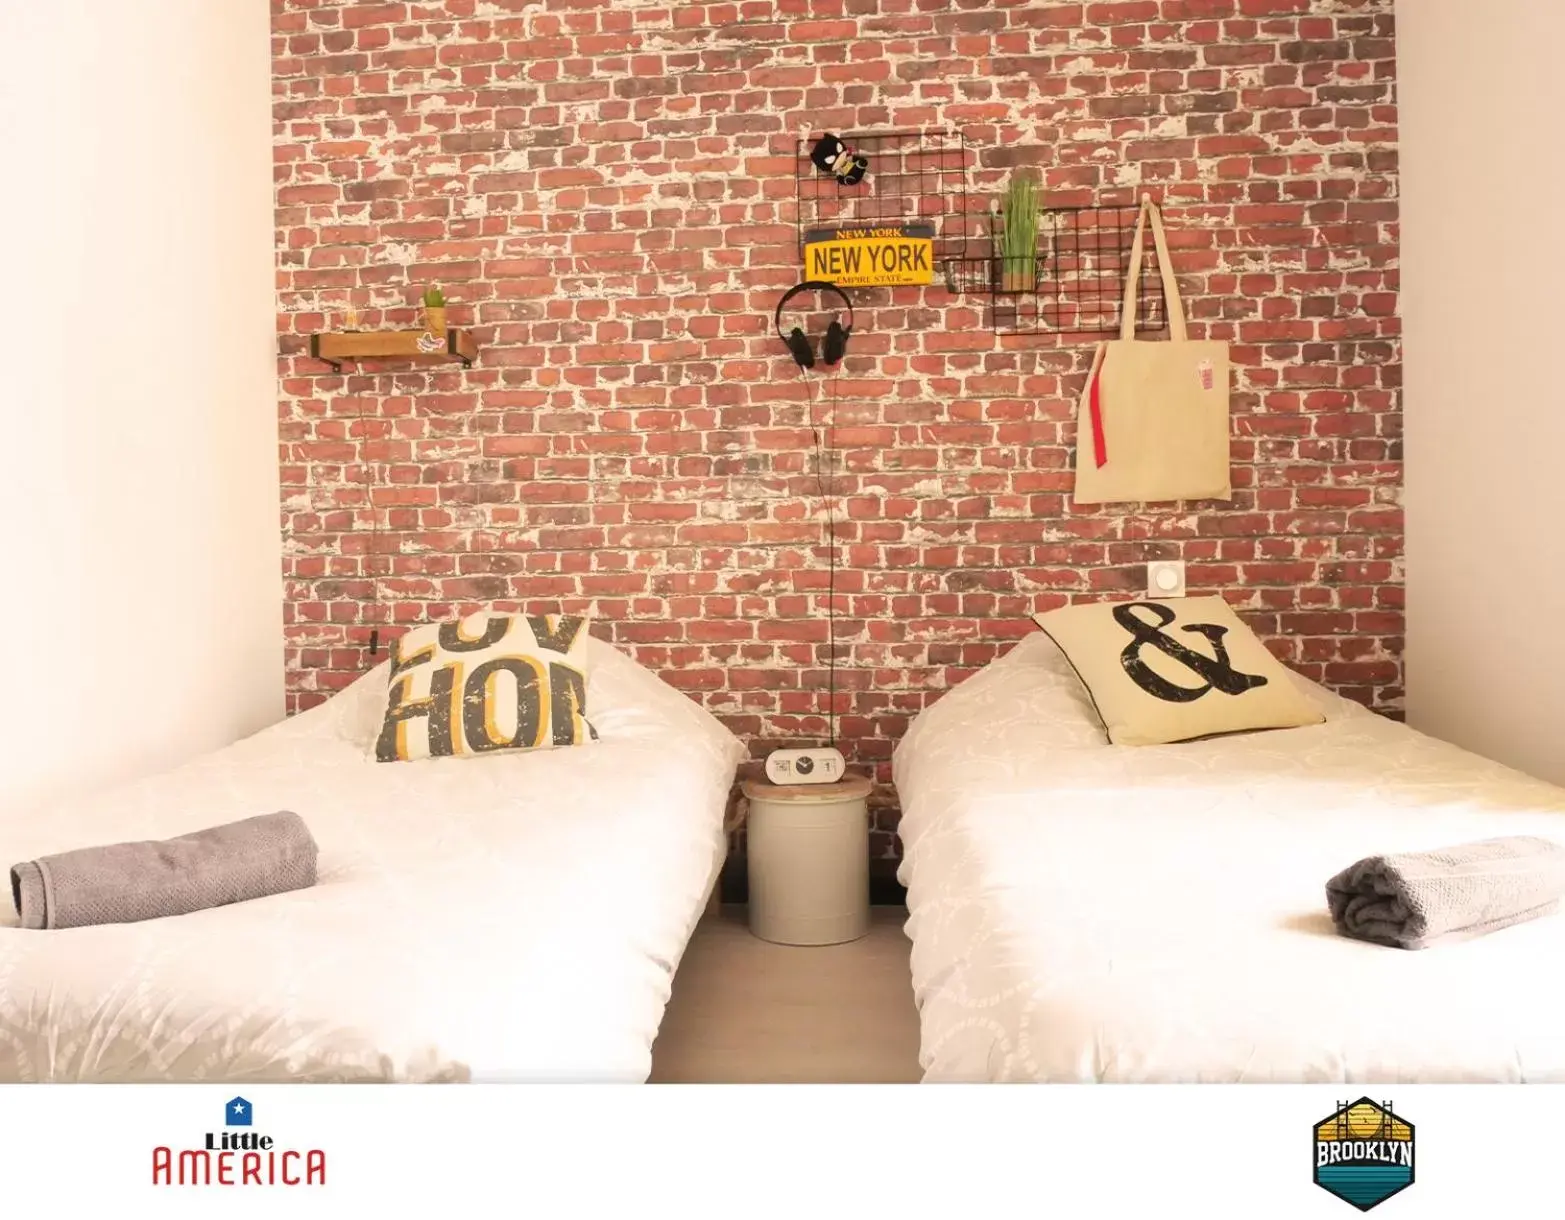 Bed in Little America - Appart Hôtel 3km Futuroscope